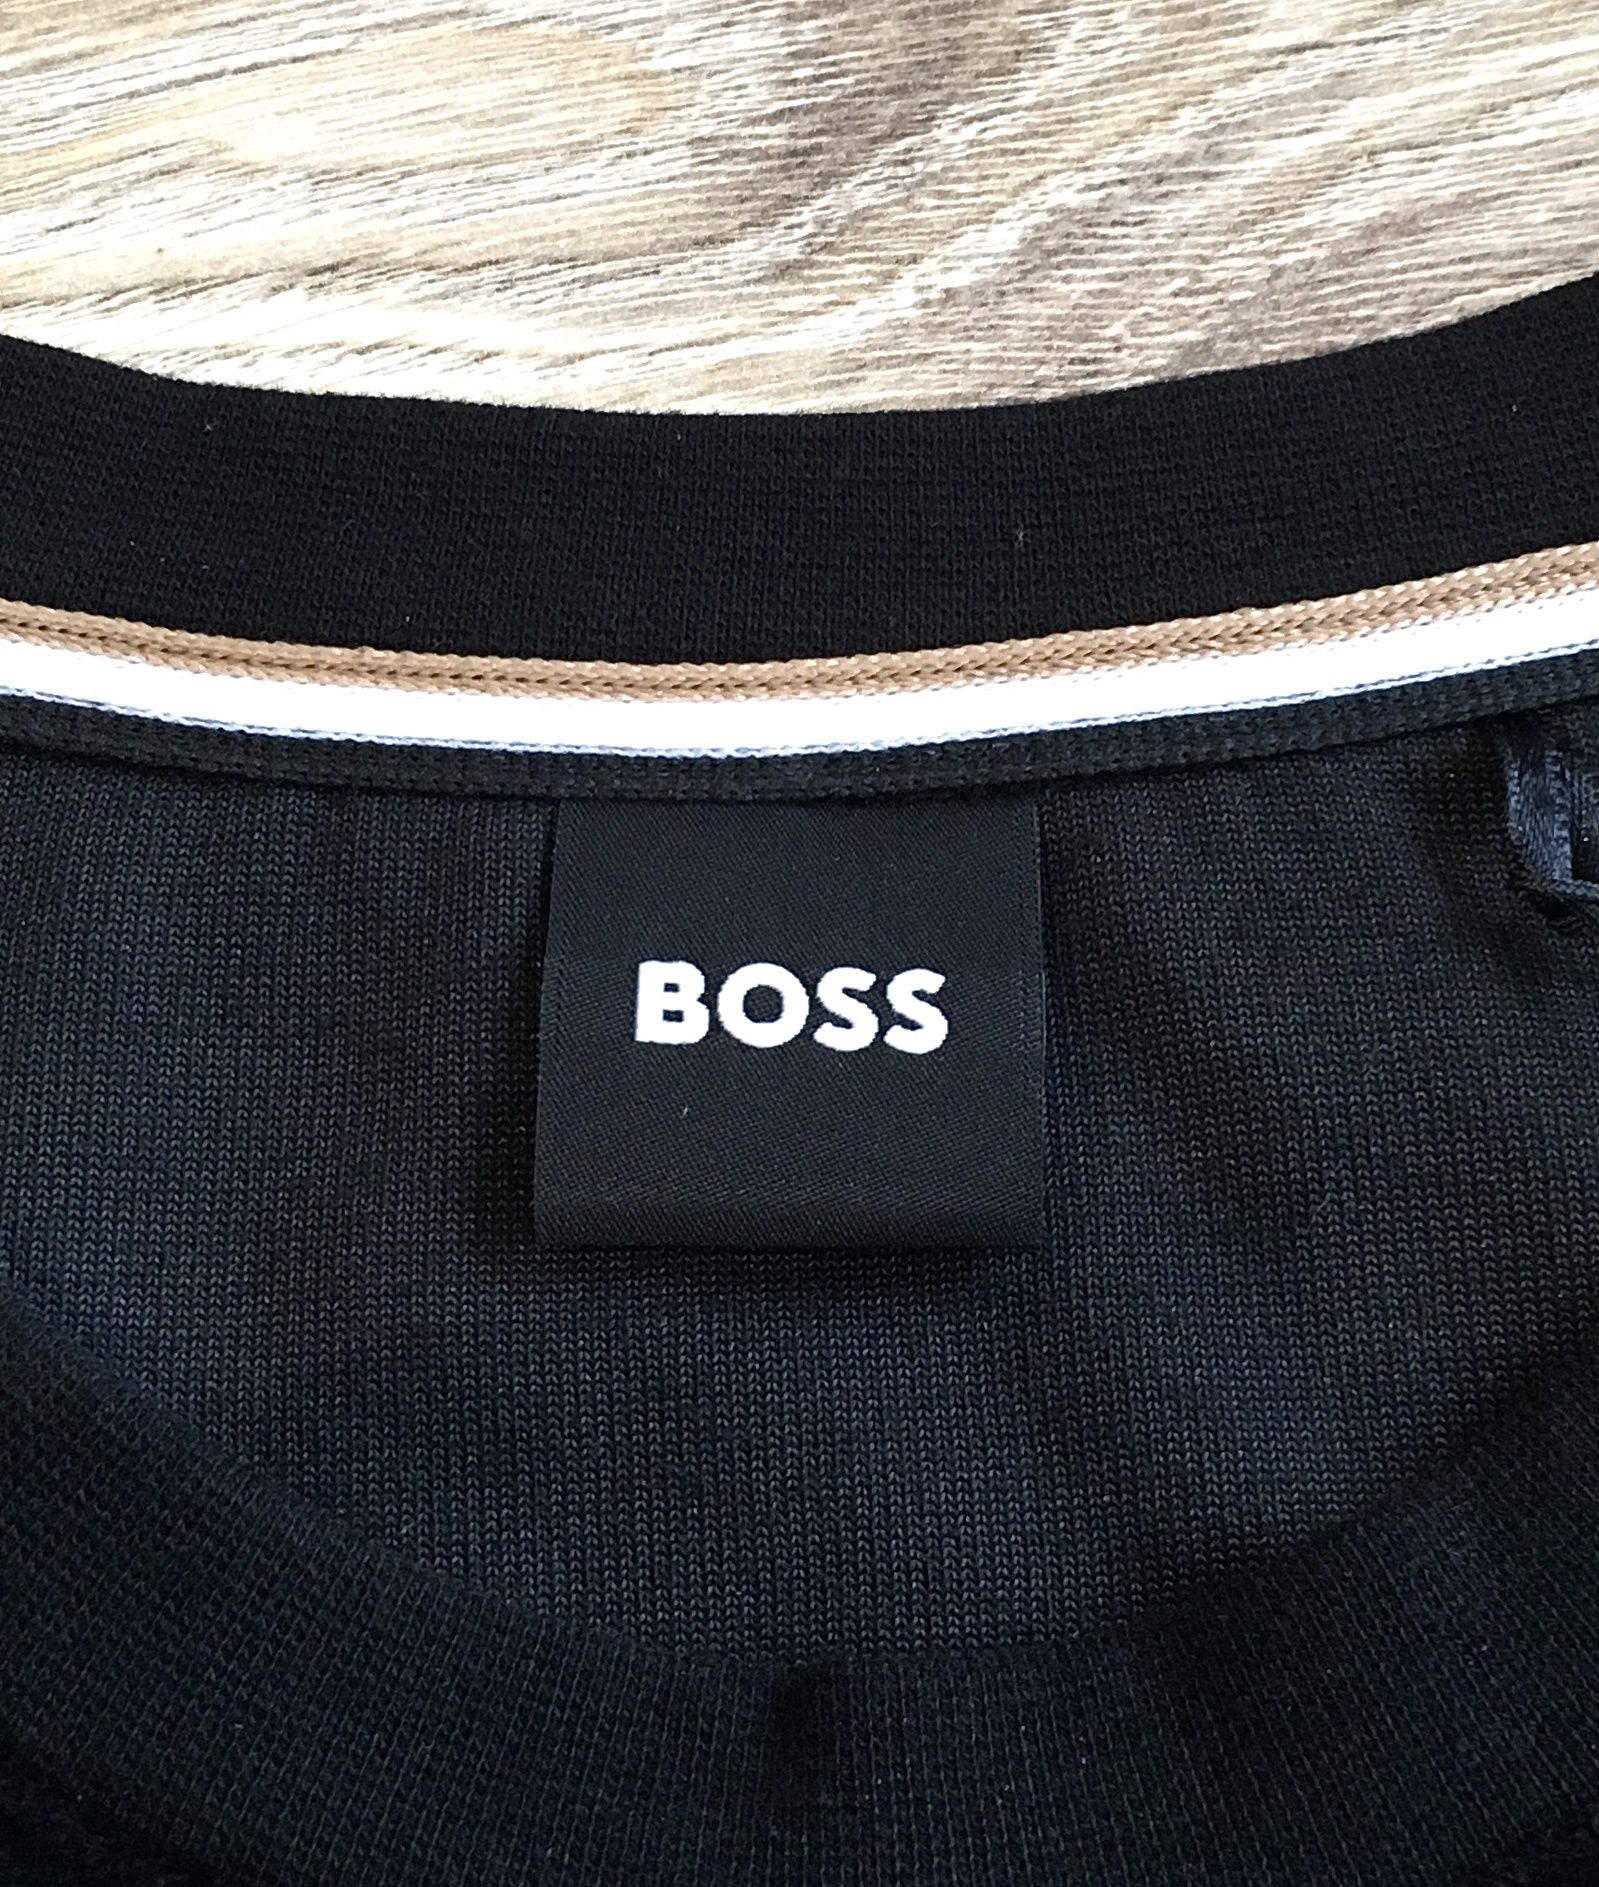 Bluza Hugo Boss welurowa. Luxury